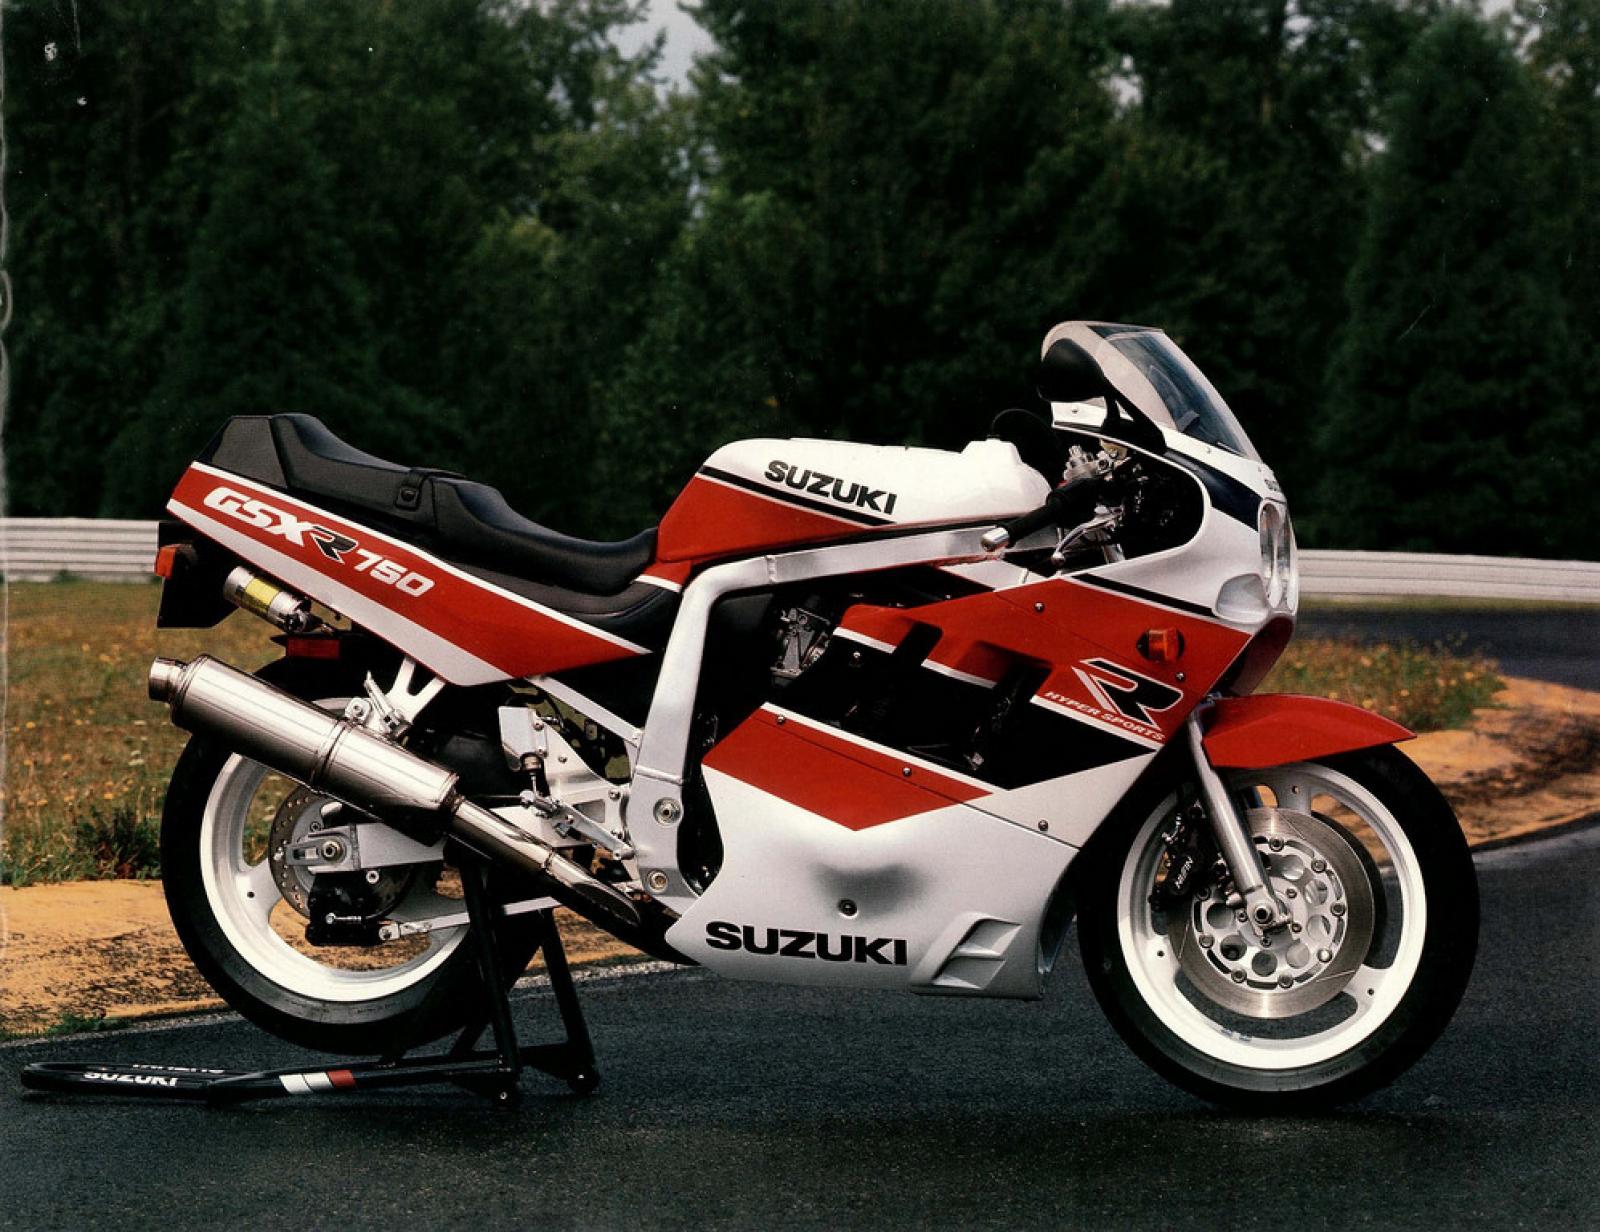 1990 Suzuki GSXR 750 (reduced effect)